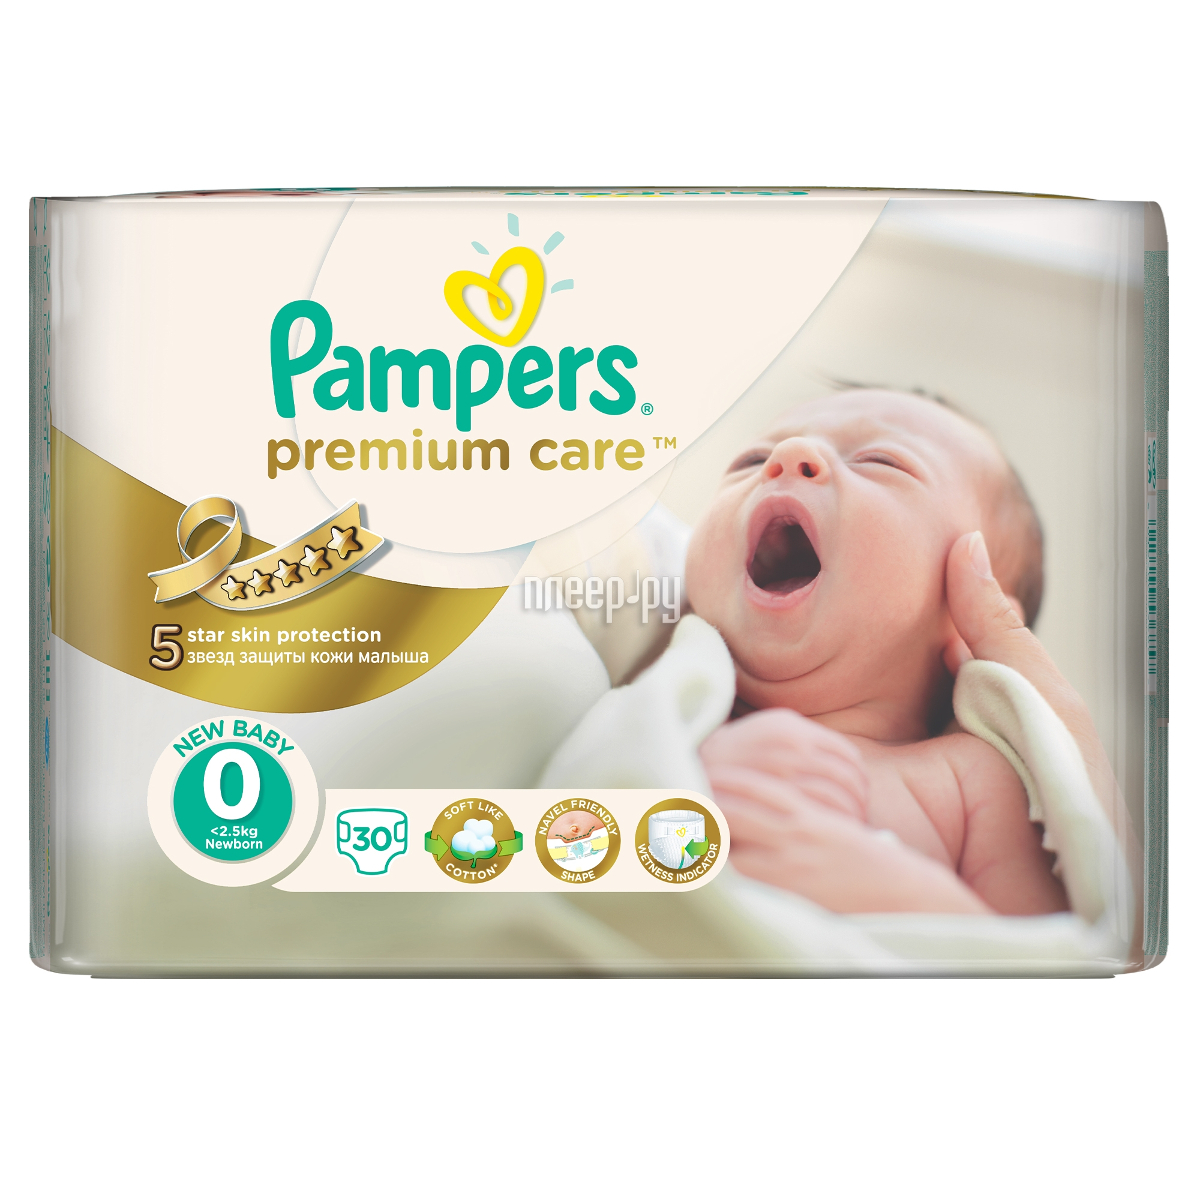  Pampers Premium Care Newborn 1-2.5 30 4015400536857  278 